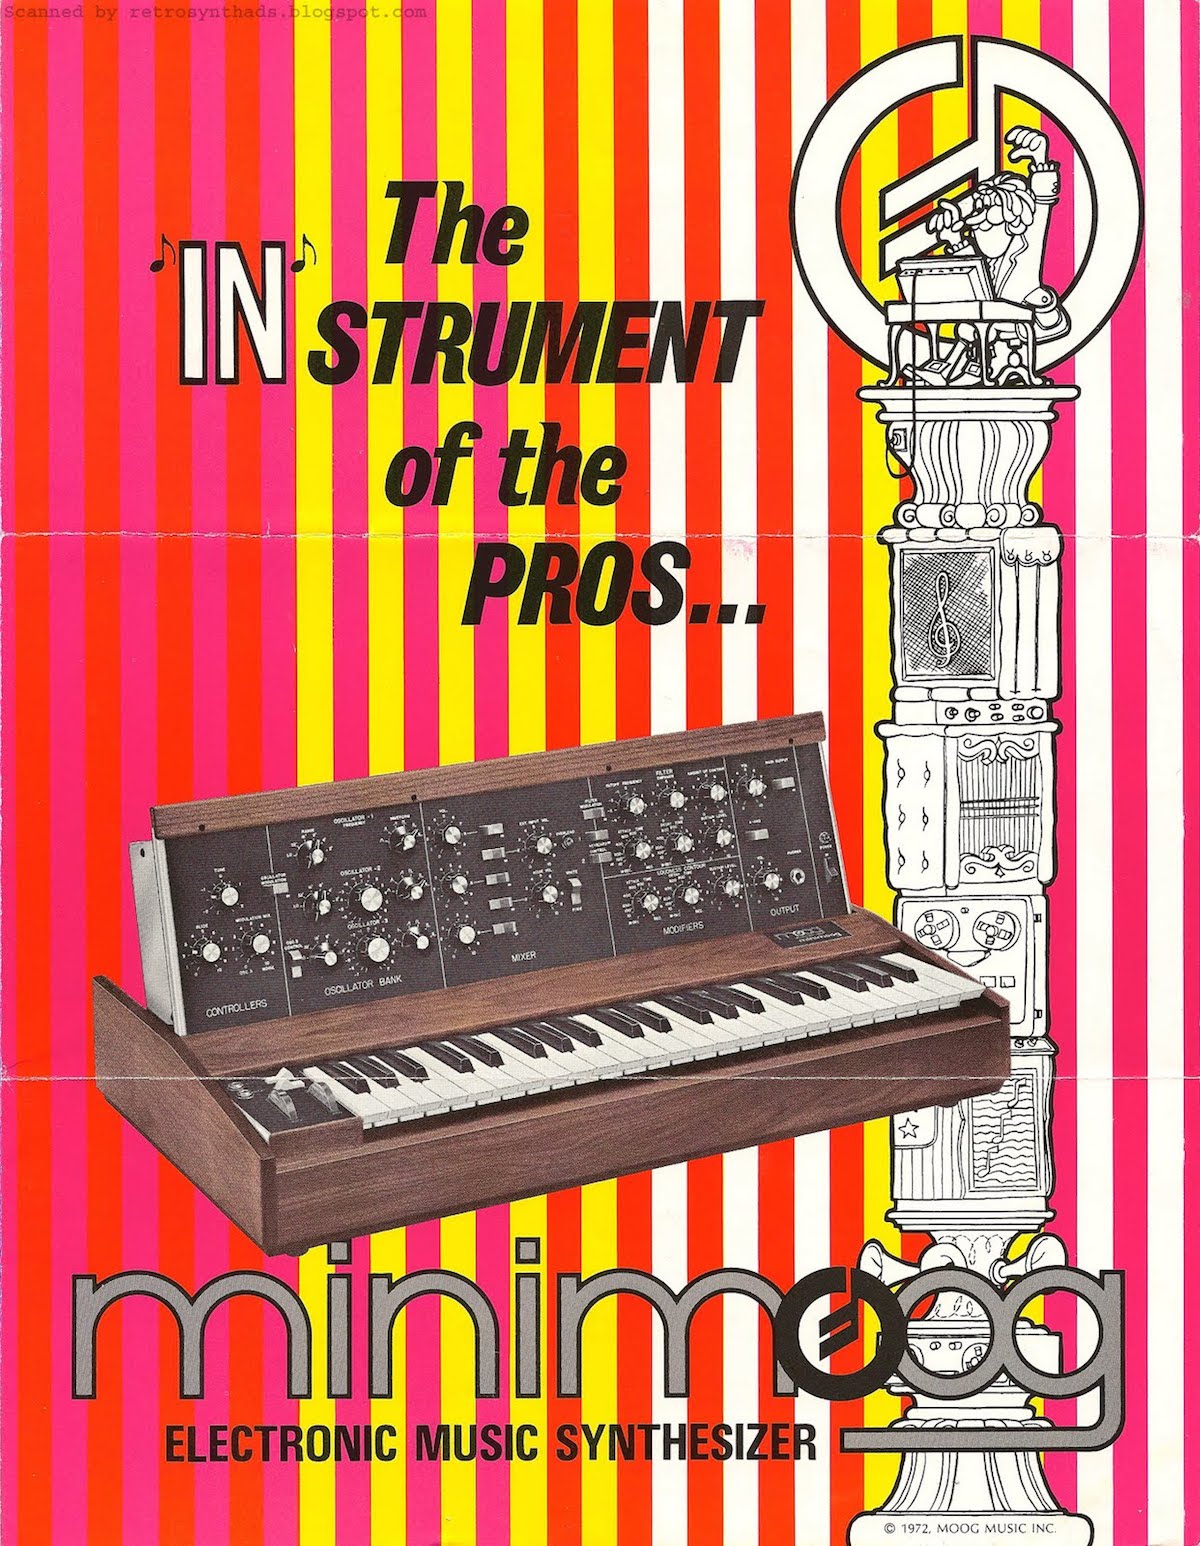 A 1972 brochure for the Minimoog.